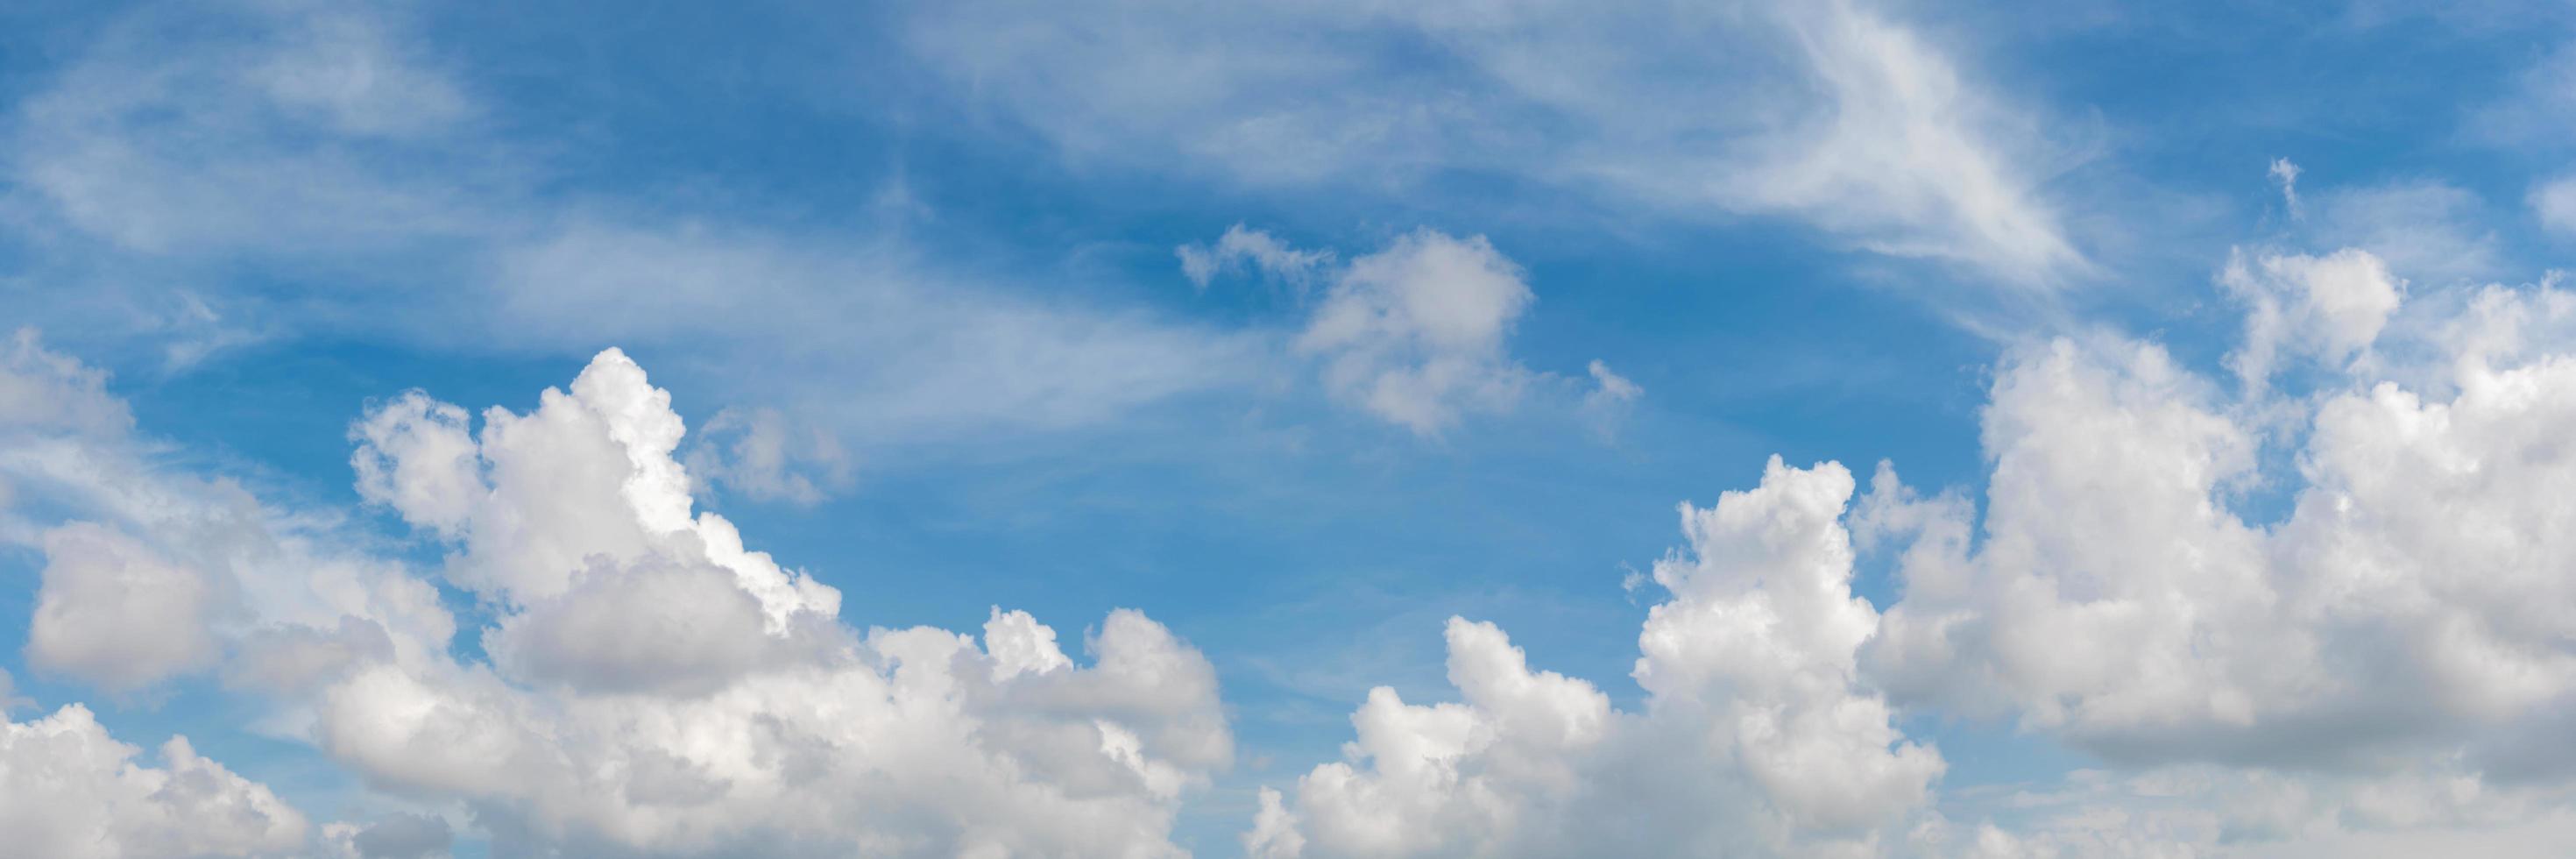 cielo panoramico con nuvole in una giornata di sole. foto